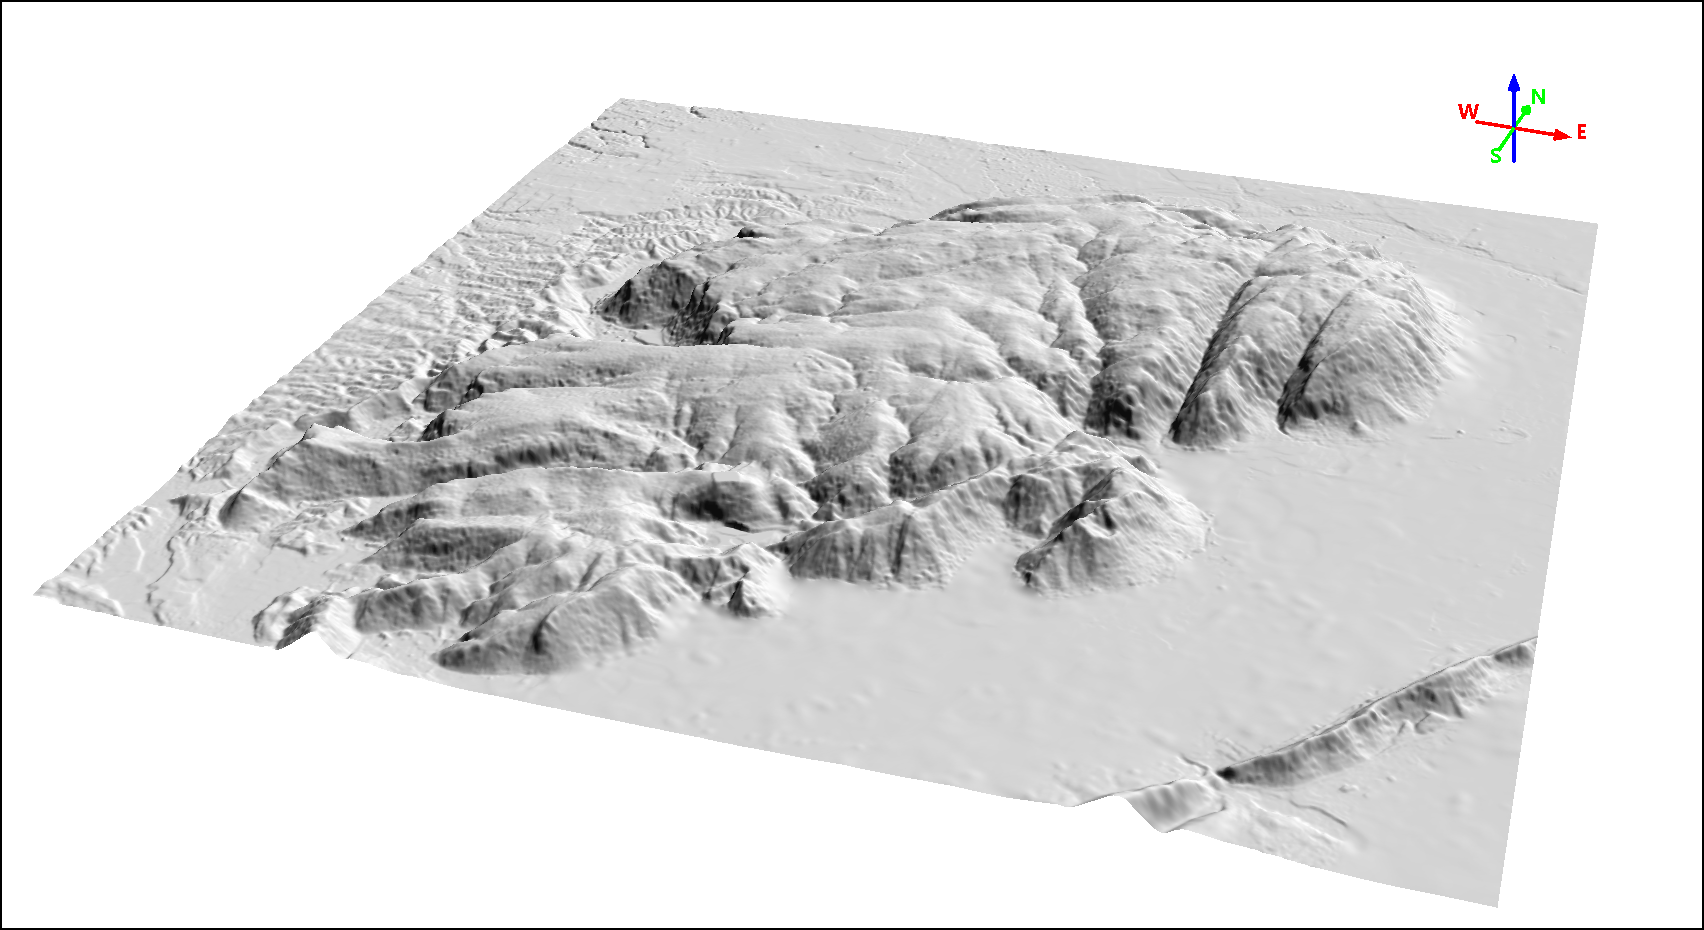 Modelo Digital de Terreno (MDT) resolução espacial de 5,0 m, montanha acidentada situada próxima à vila de Samode no estado de Rajastão, norte da Índia